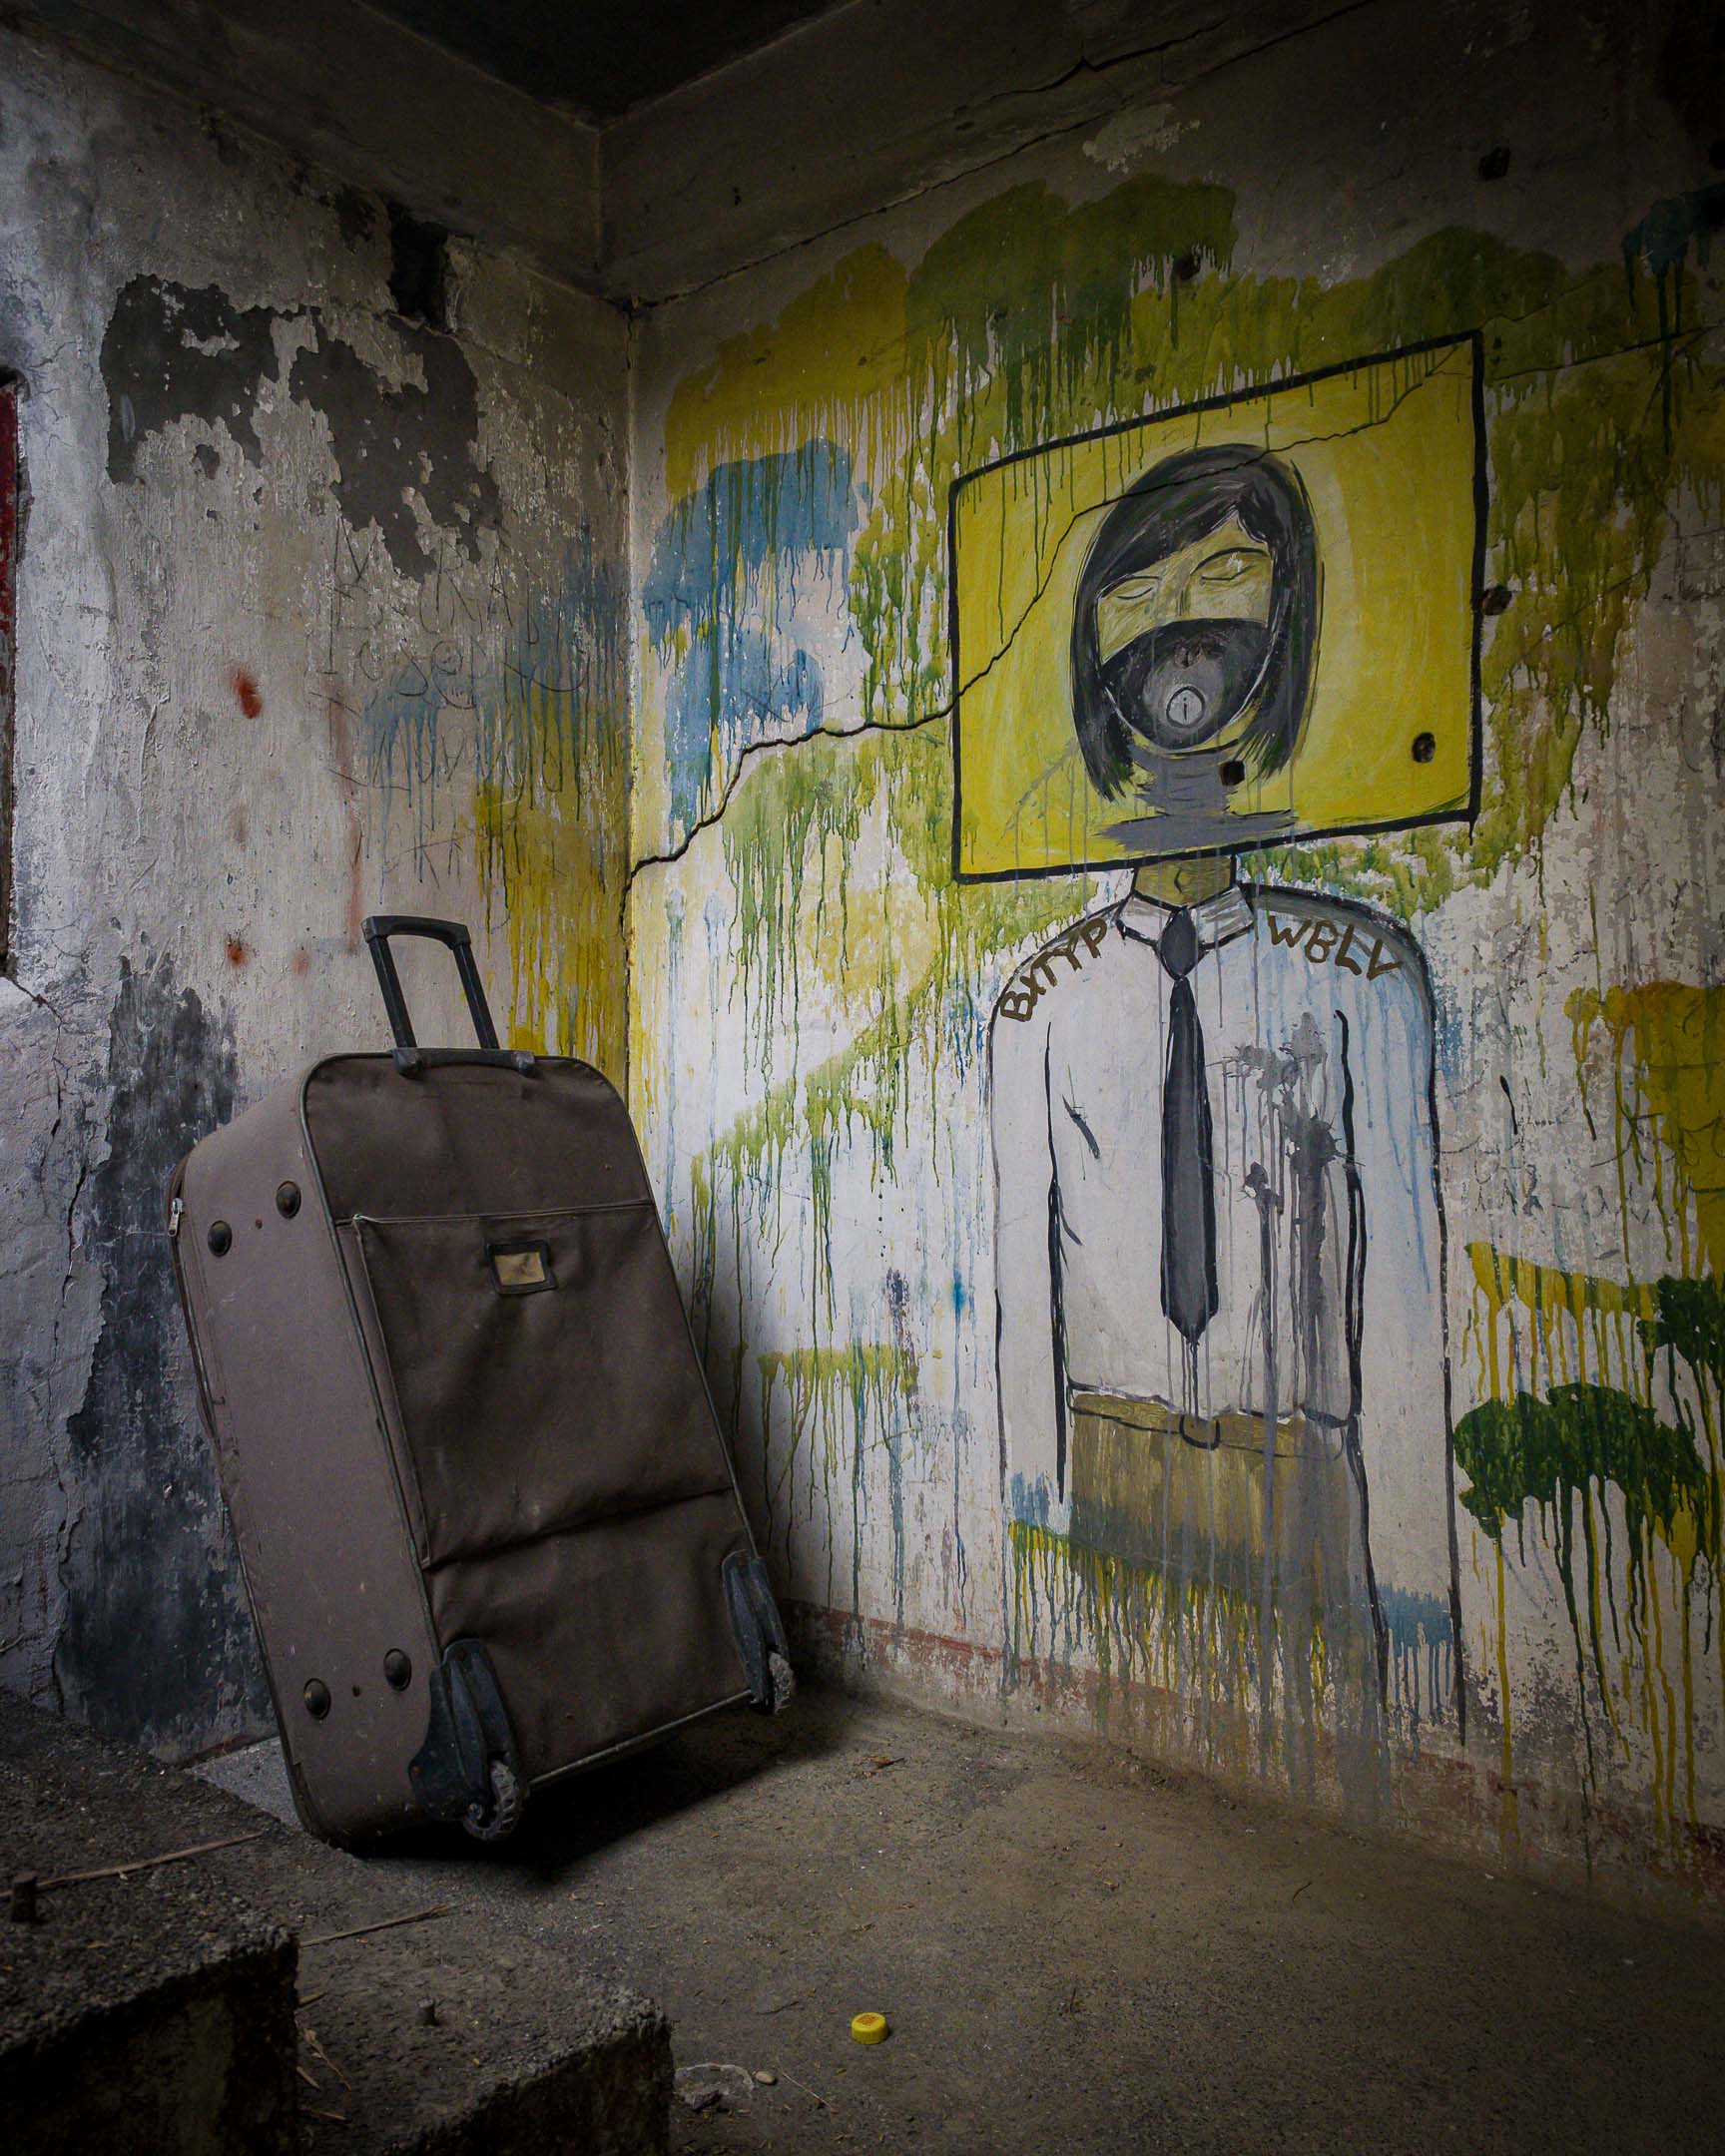 Luggage and graffiti